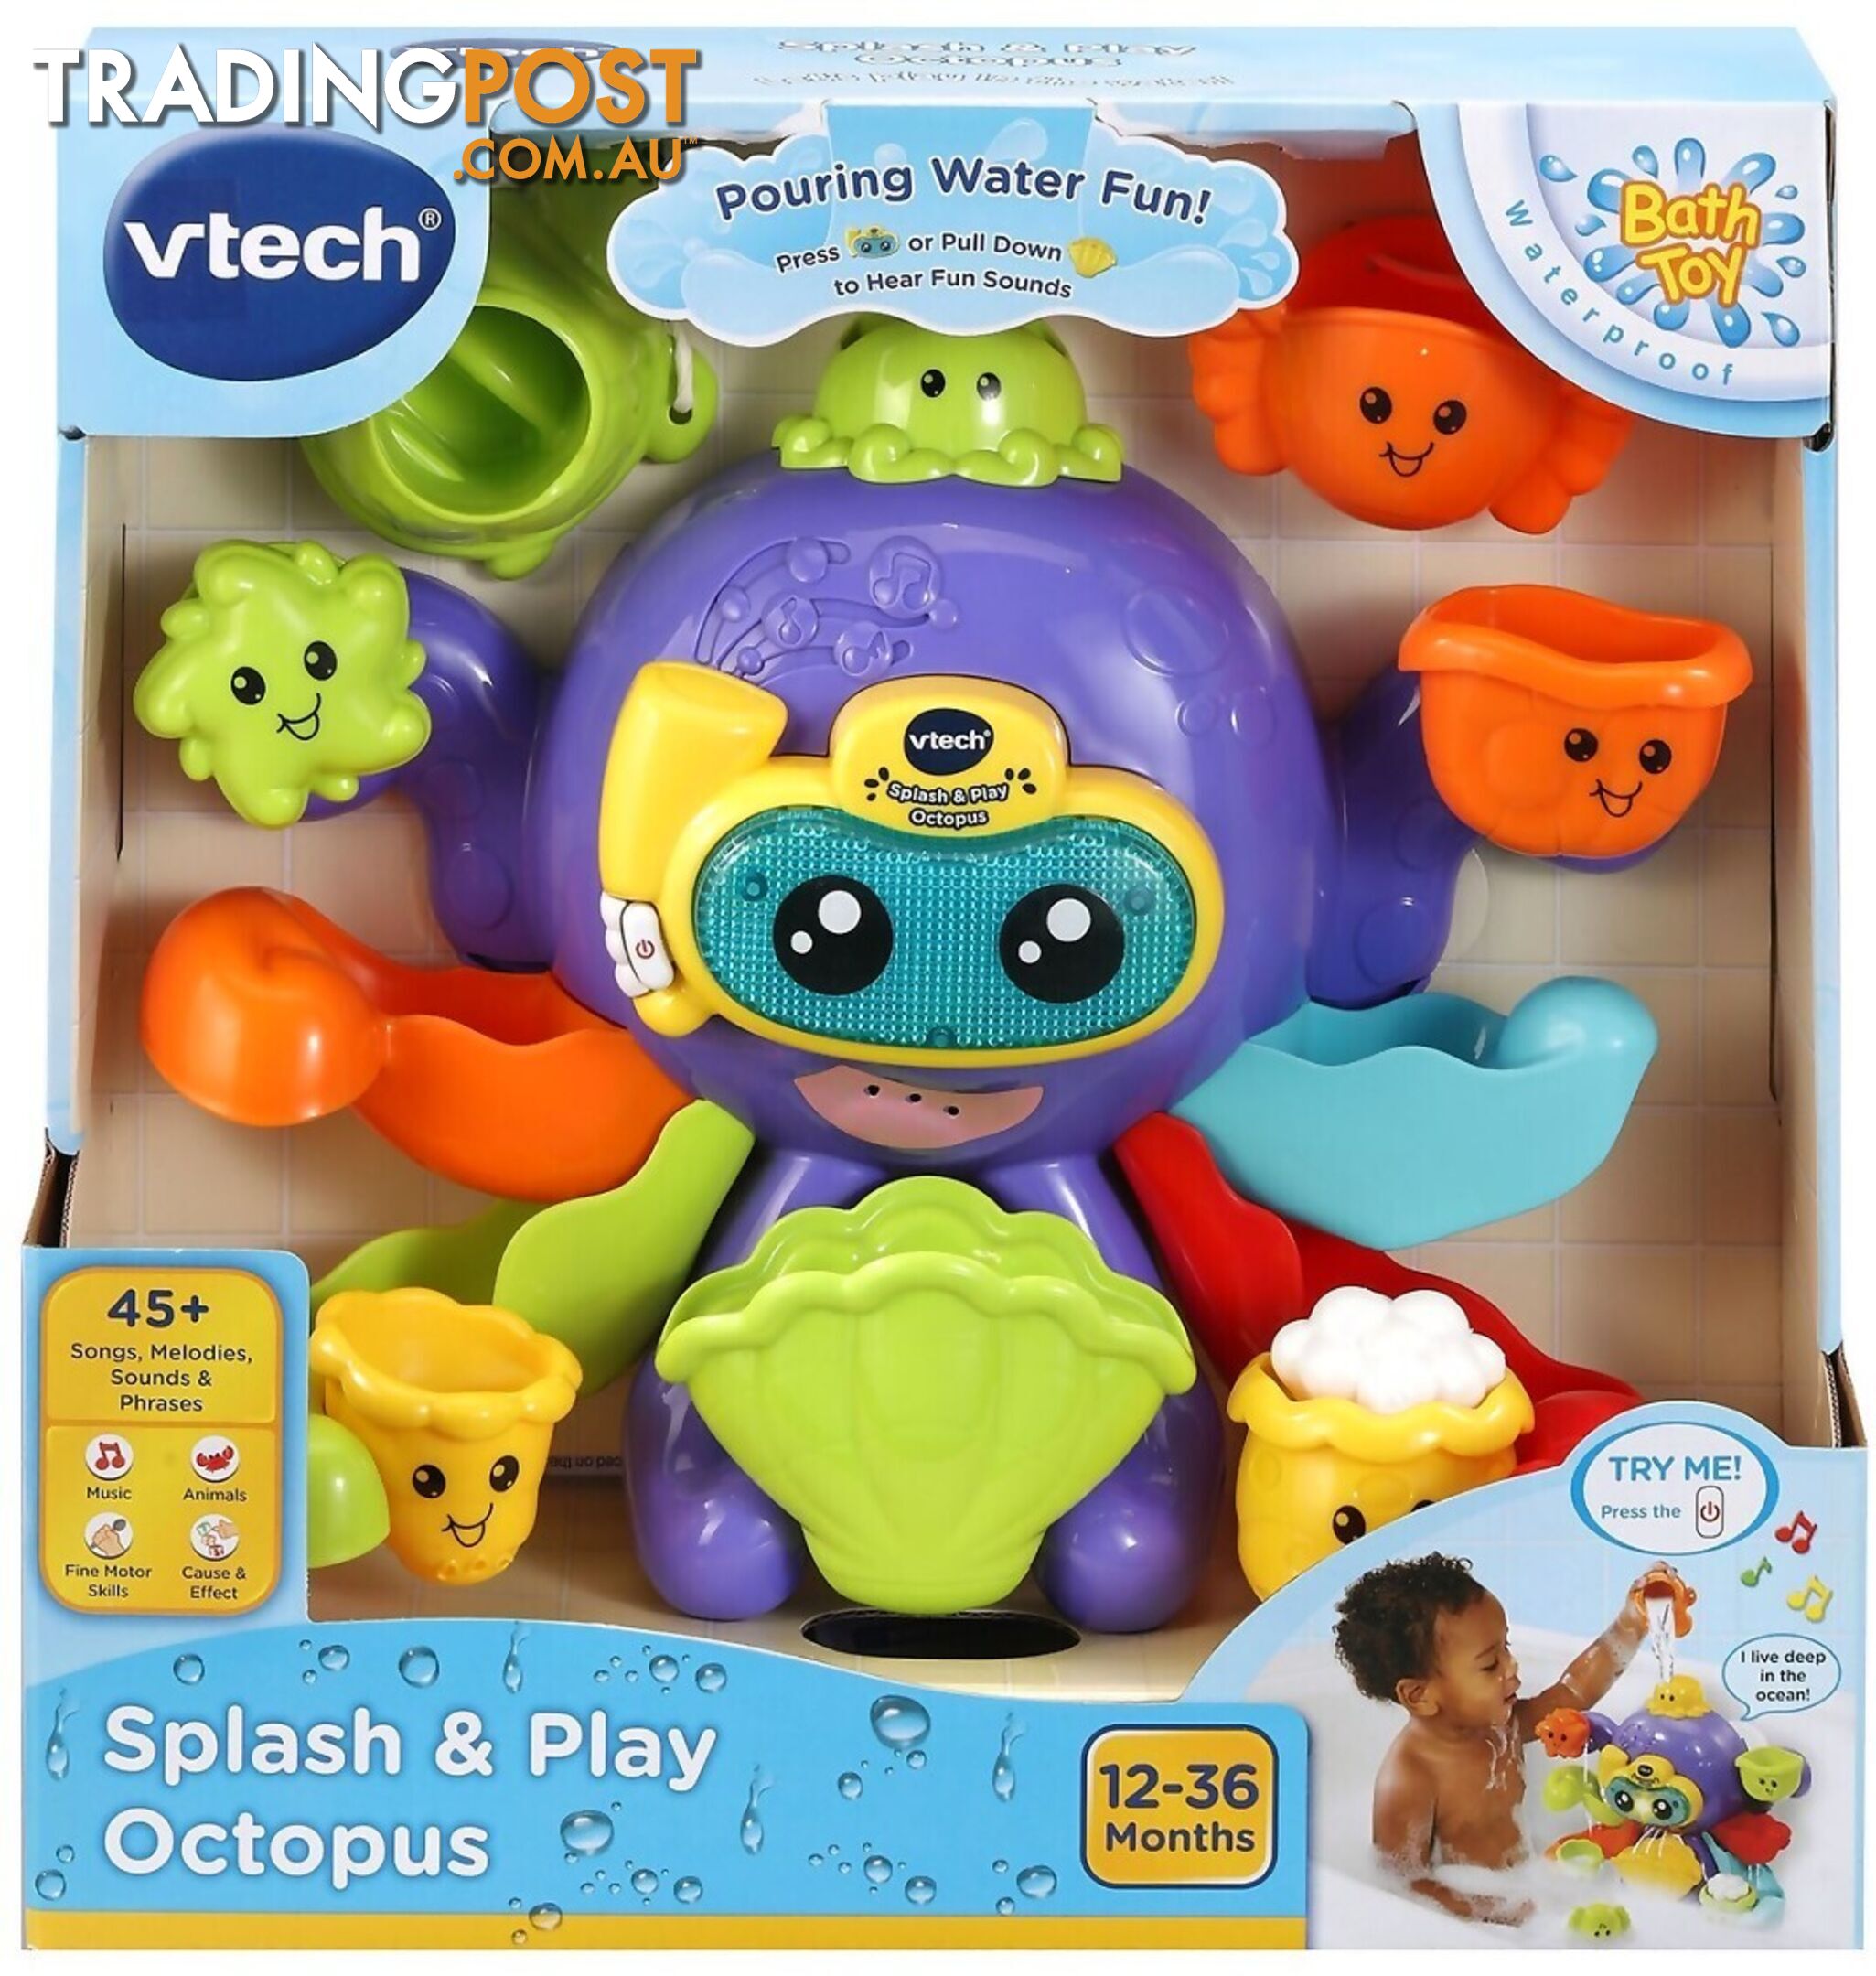 Vtech - Splash & Play Octopus - Tn80555203004 - 3417765552038